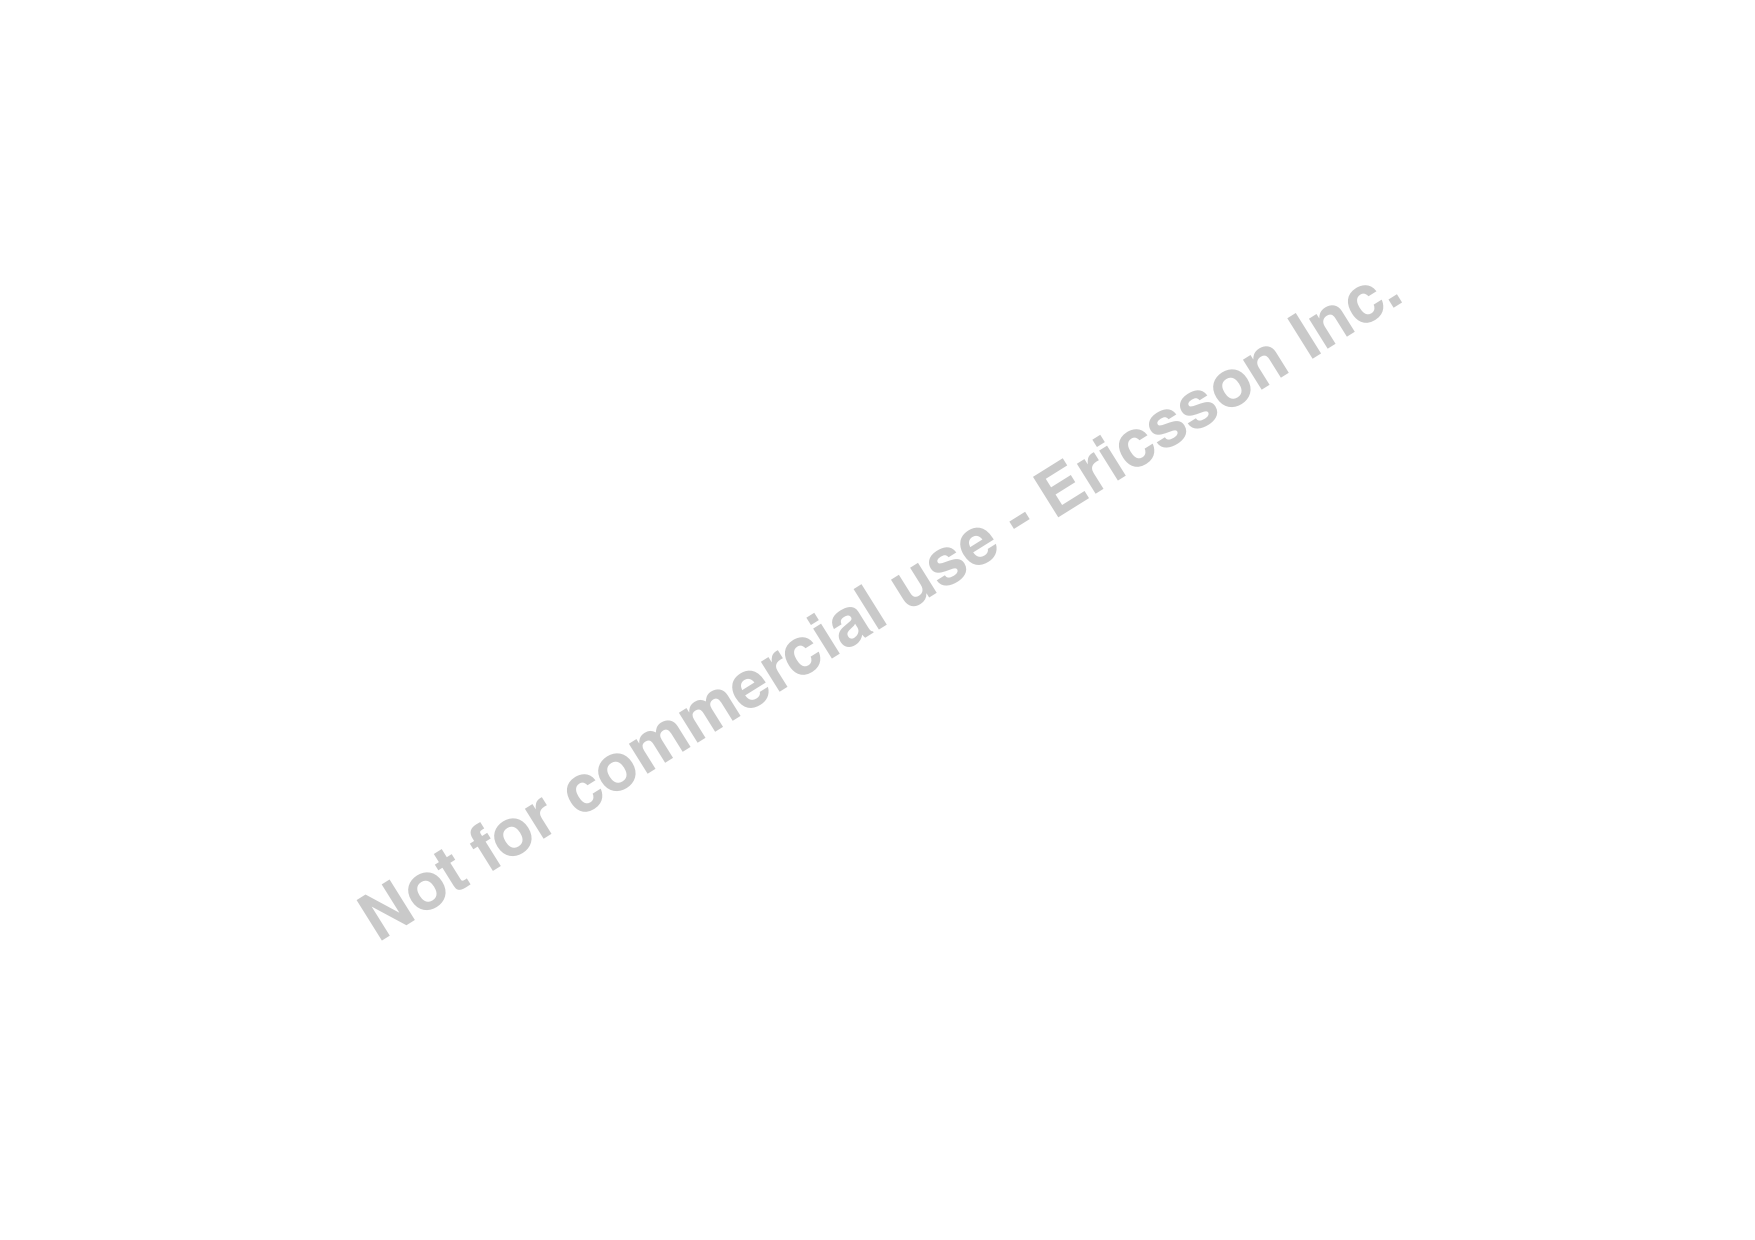 Notforcommercialuse-EricssonInc.